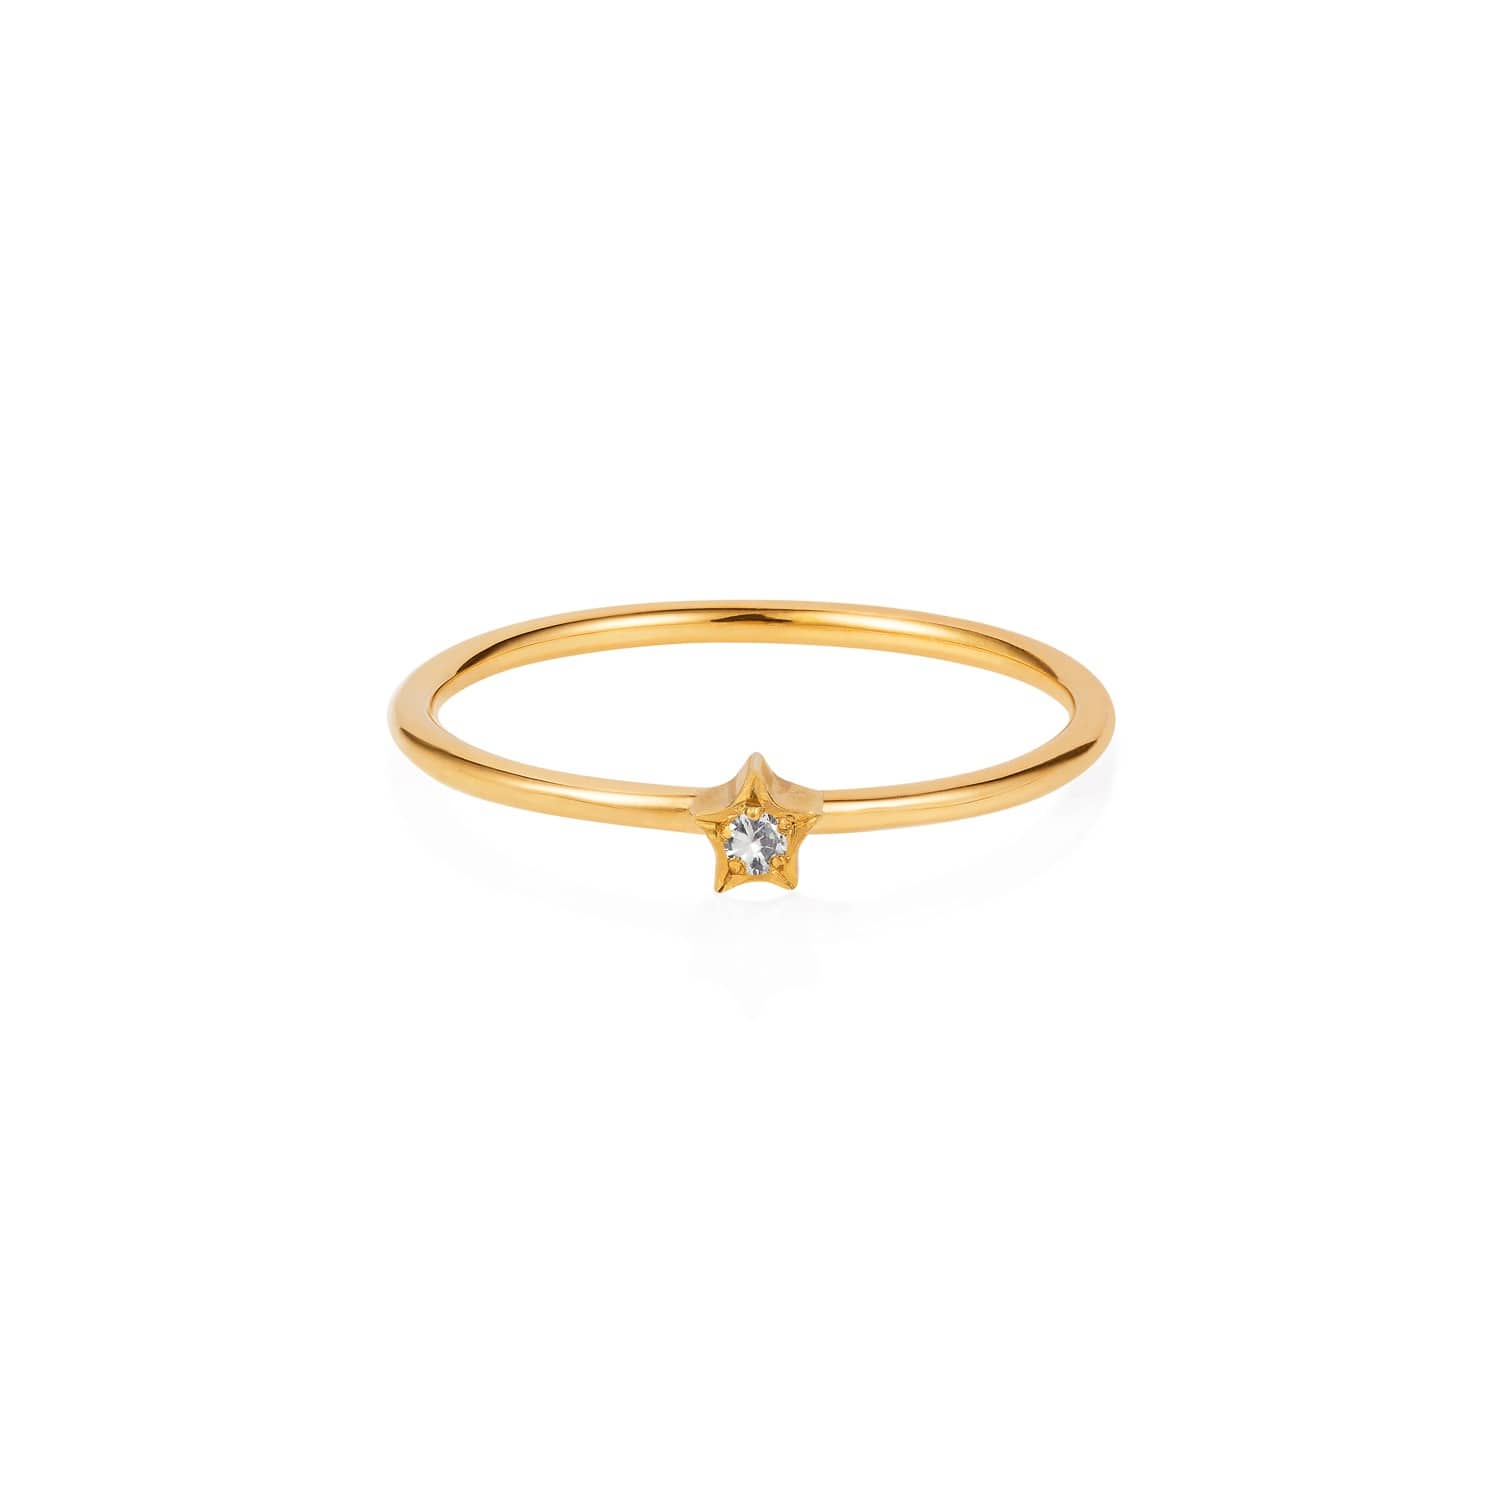 tiny star ring